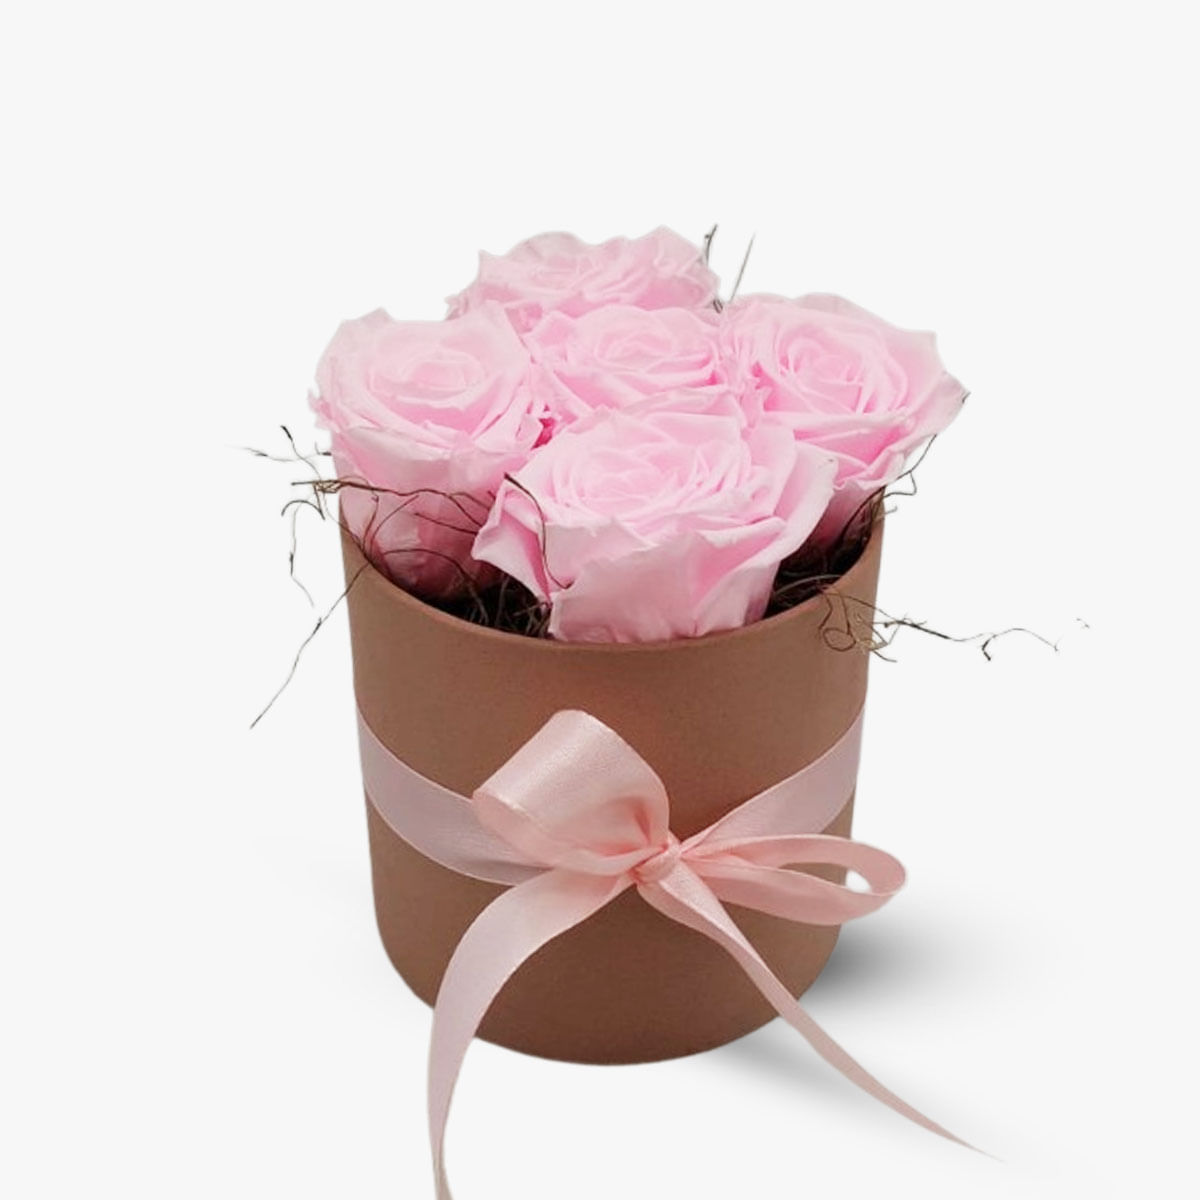 Cutie cu 5 trandafiri roz, criogenati – Standard criogenati